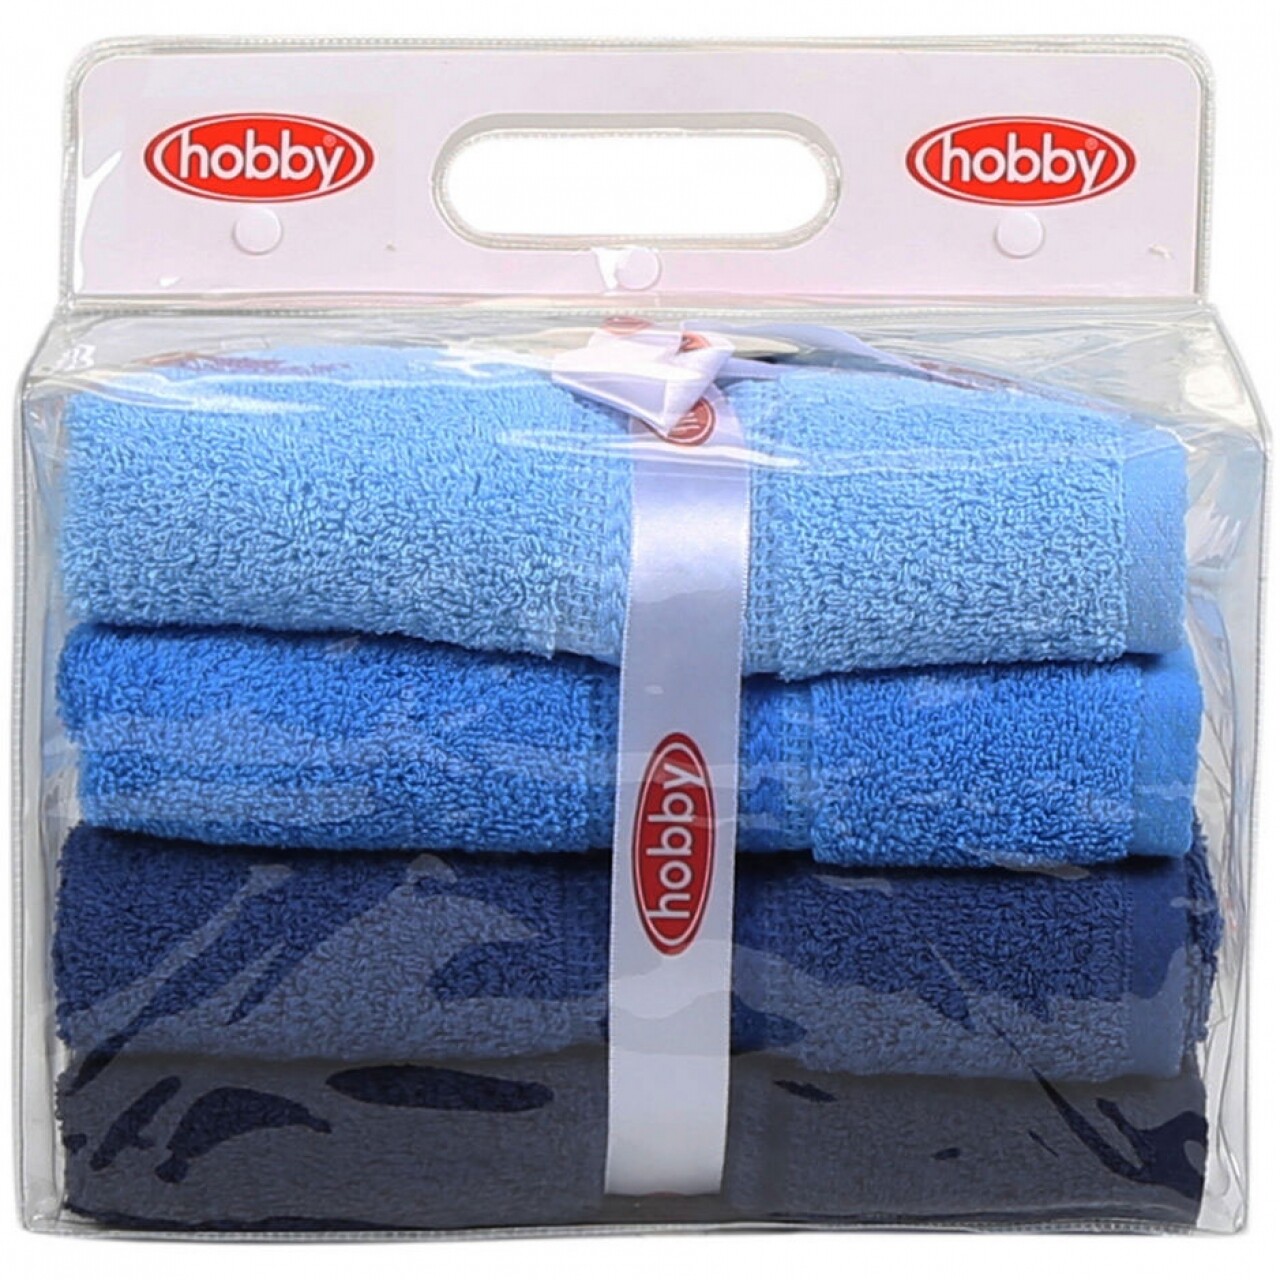 4 Db Blue Delight Kéztörlő Készlet, Hobby, 50 X 90 Cm, 100% Pamut, Kék